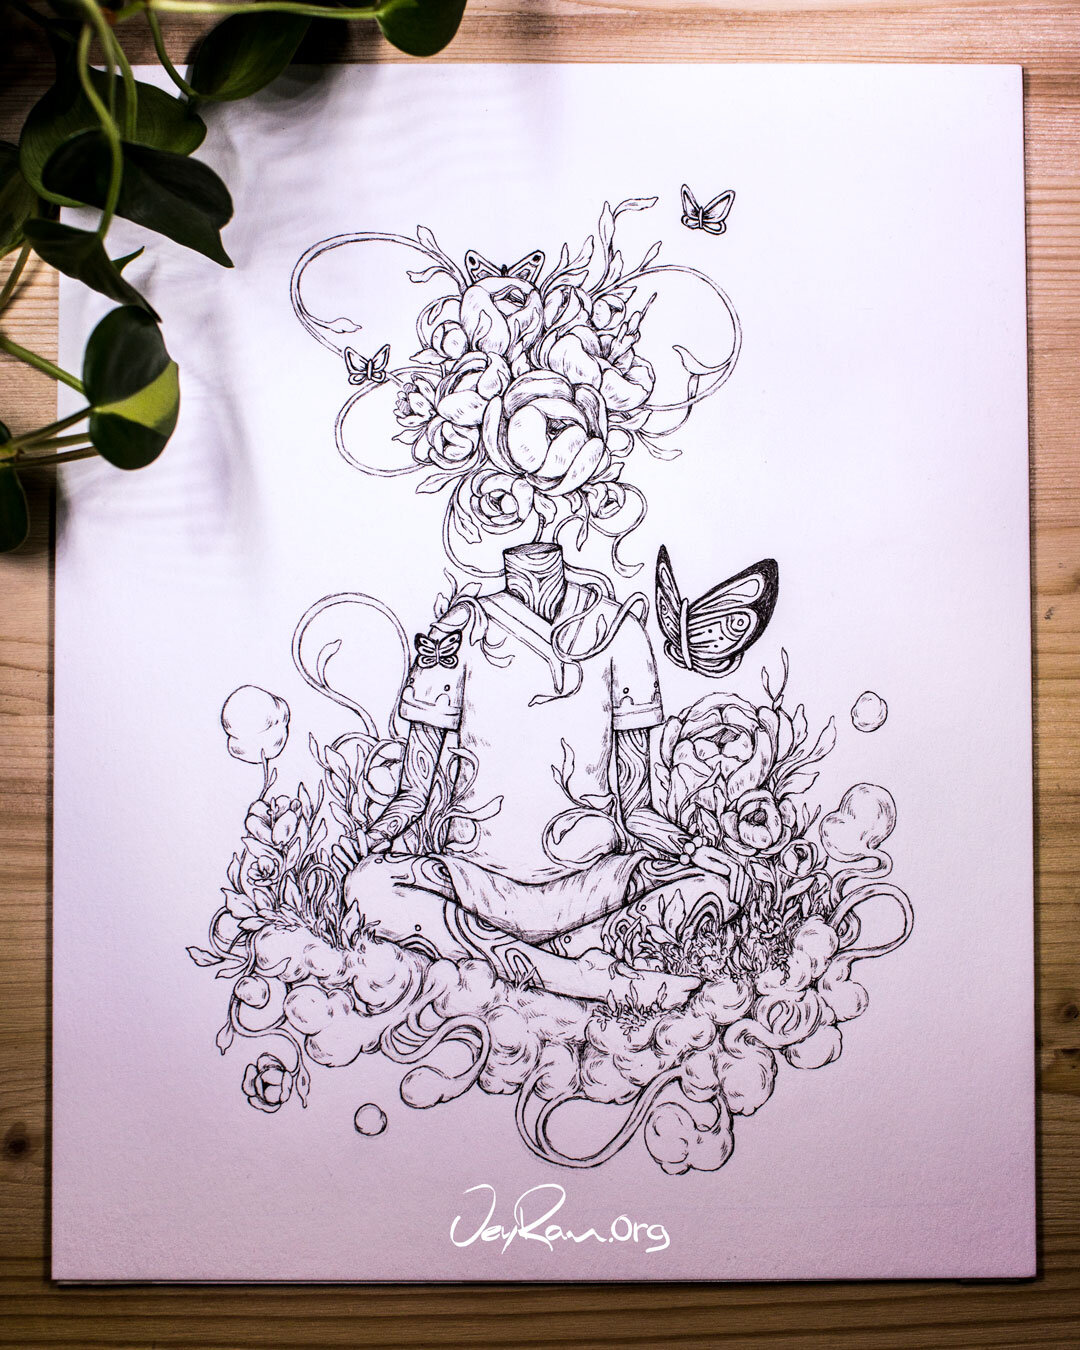 Meditation inspired Ink Drawing by JeyRam #art #drawing #illustration #inktober